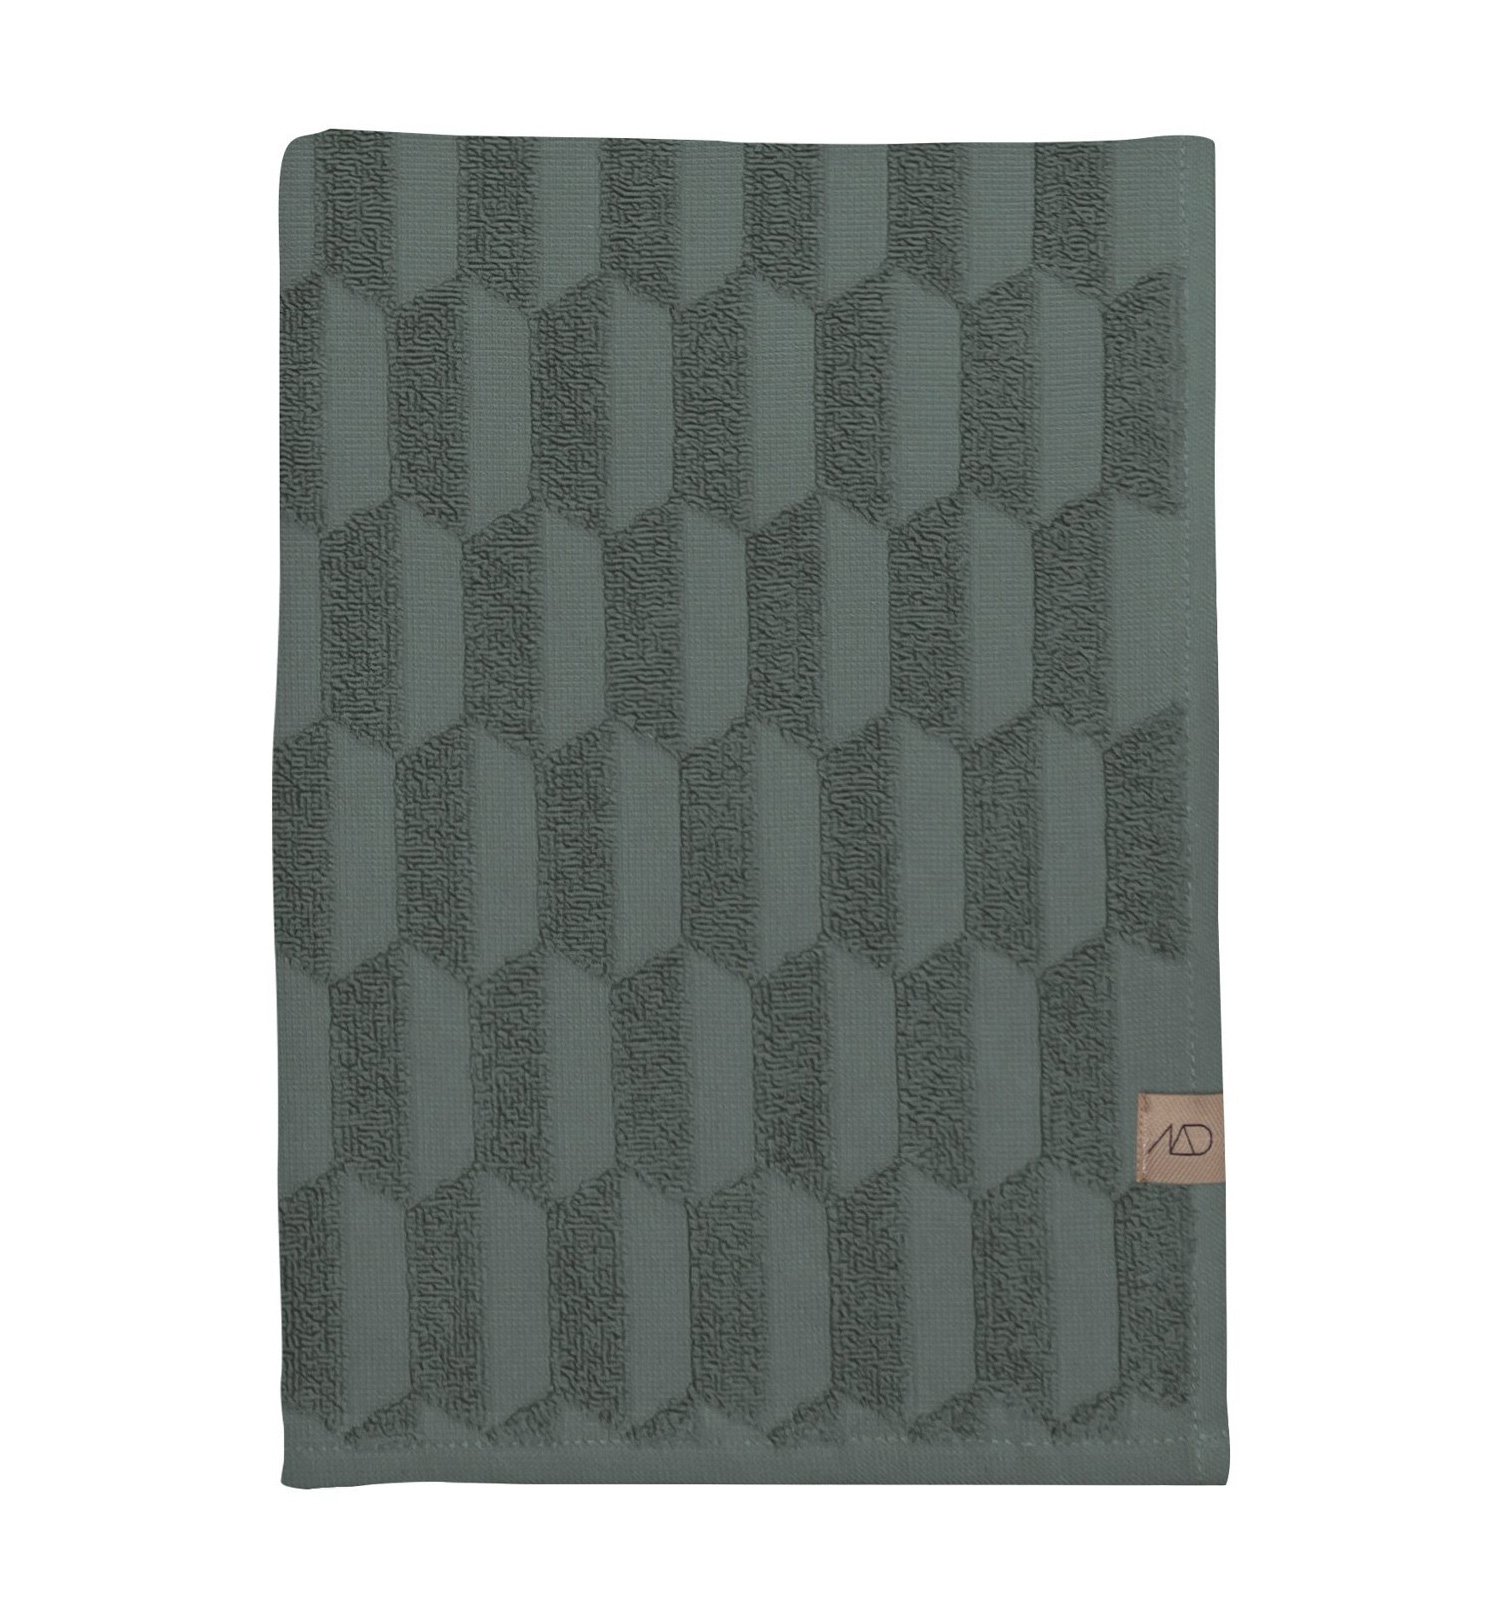 Mette Ditmer - Geo Towel 50 x 95 cm - Pine green